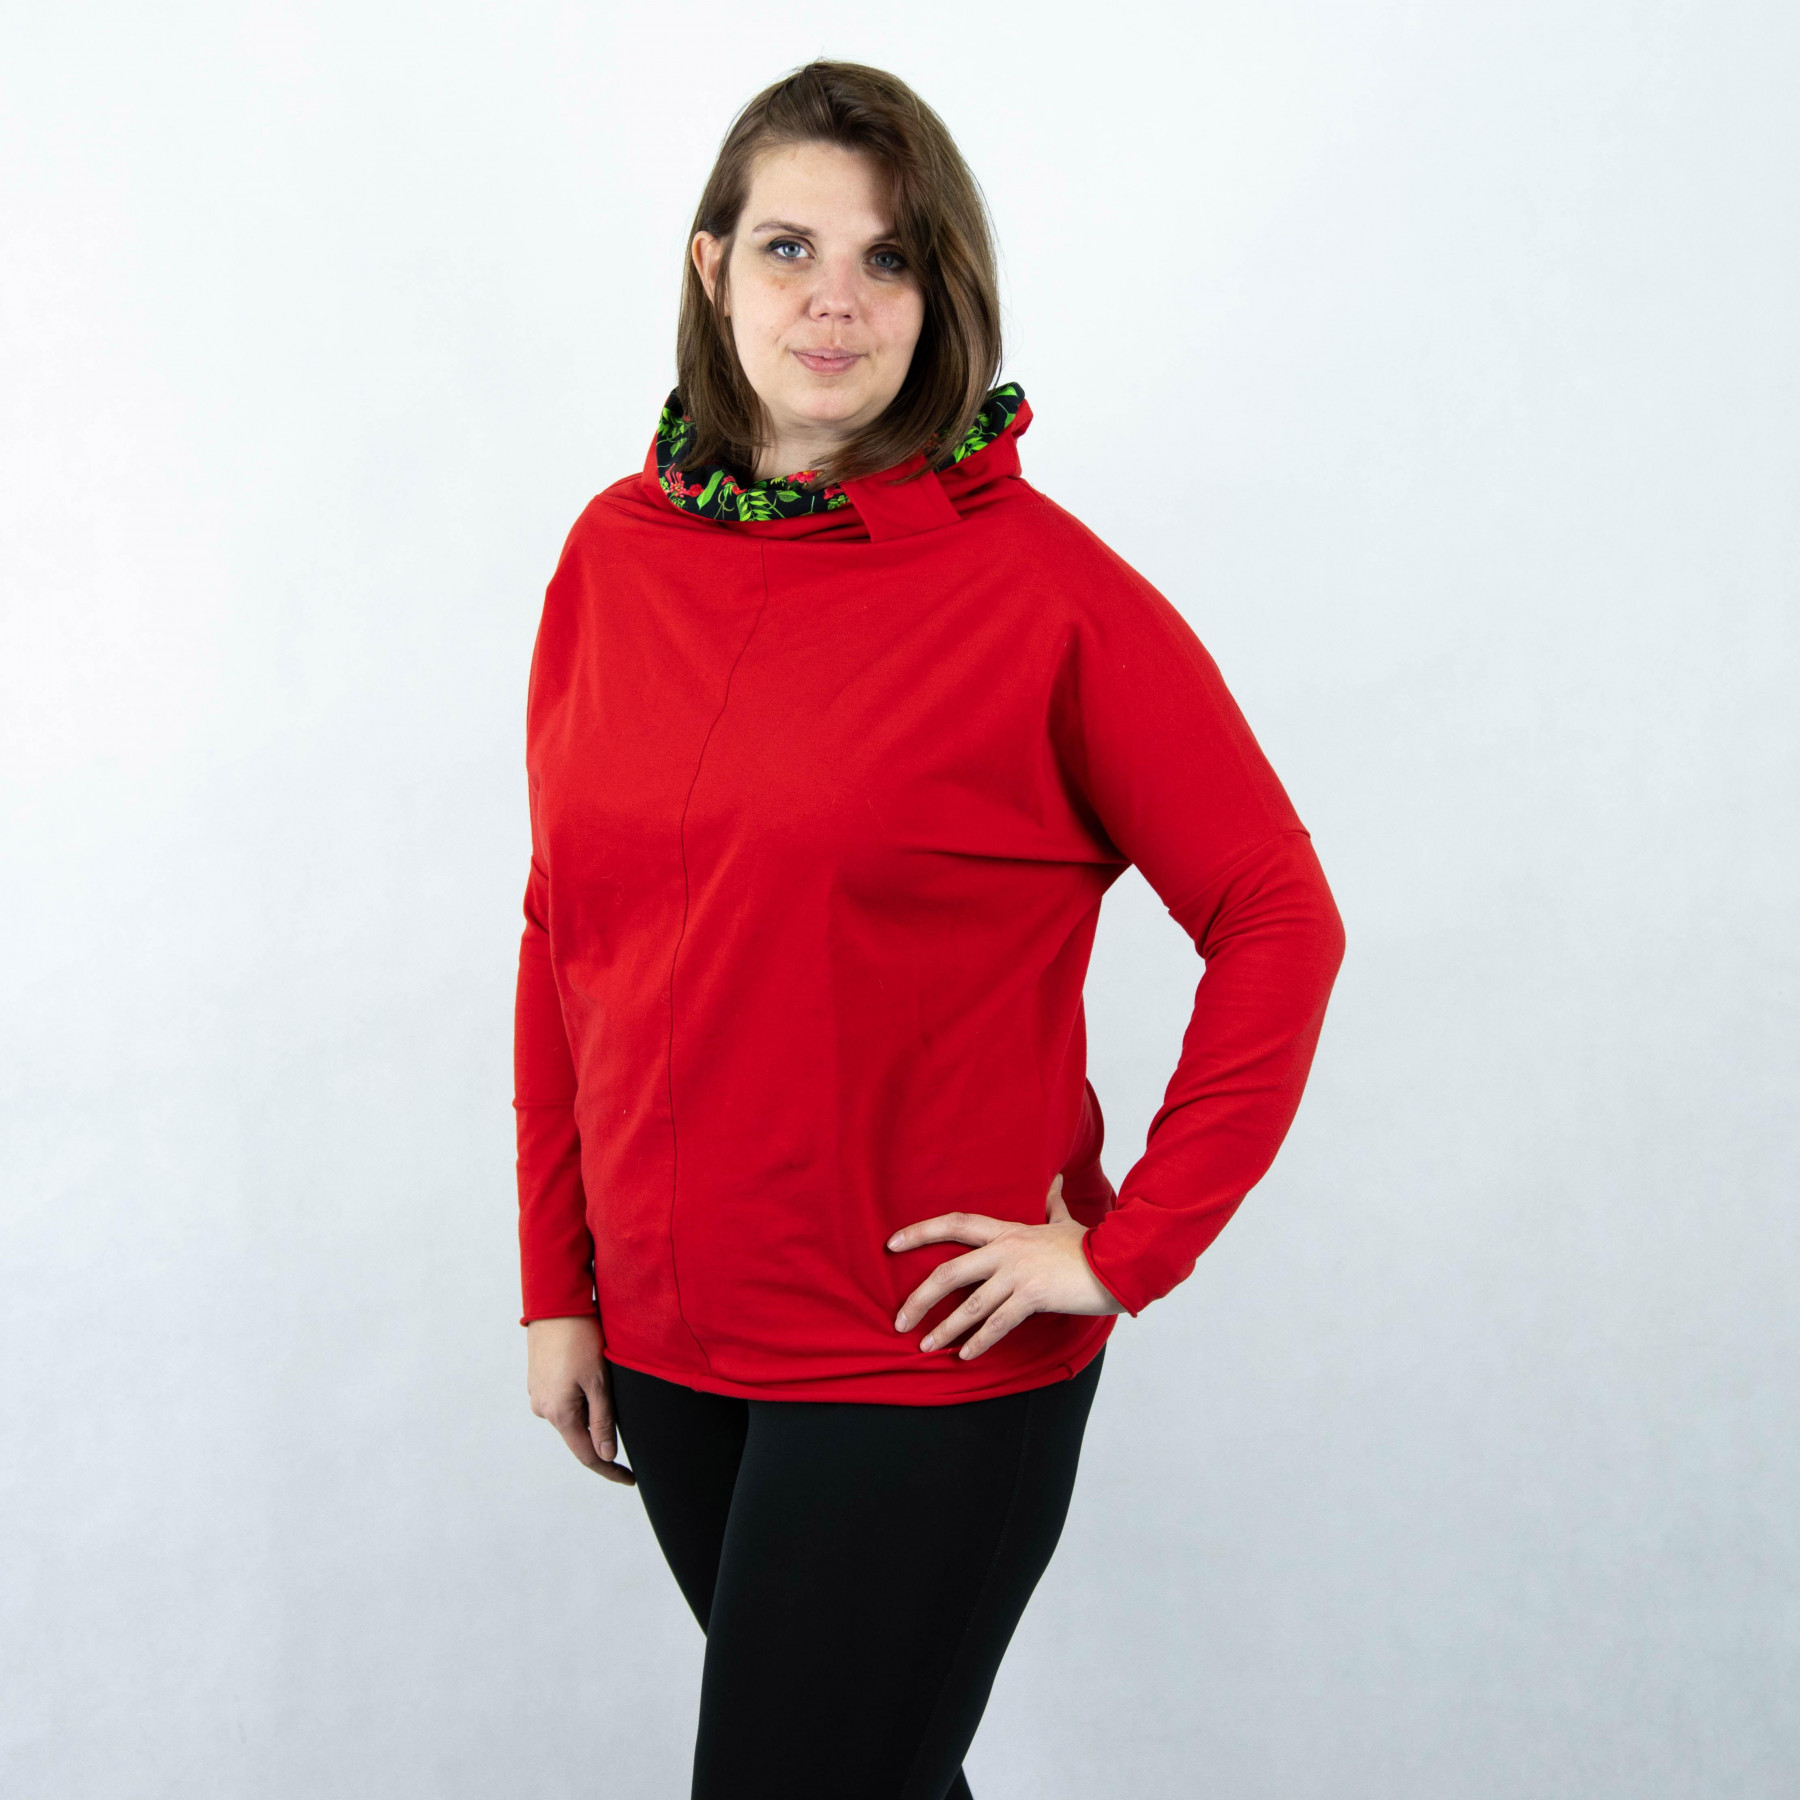 Sweatshirt mit Schalkragen und Fledermausärmel (FURIA) - ORANGE SPECKS / purpur blätter - Nähset